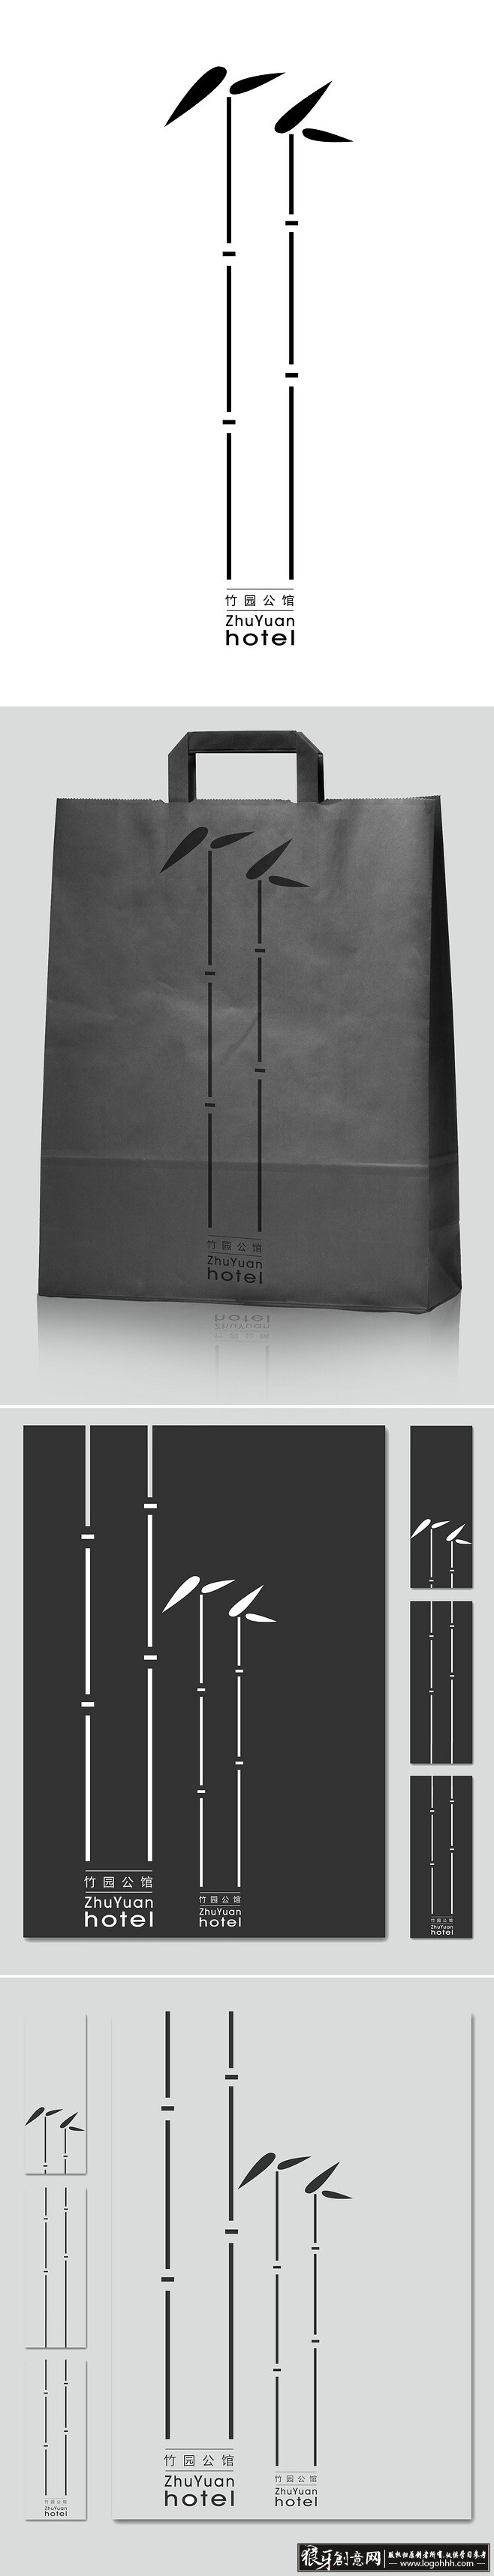 VI品牌设计 竹园公馆LOGO设计欣赏 创意竹元素logo设计作品 黑色经典手提袋设计 简约手提袋